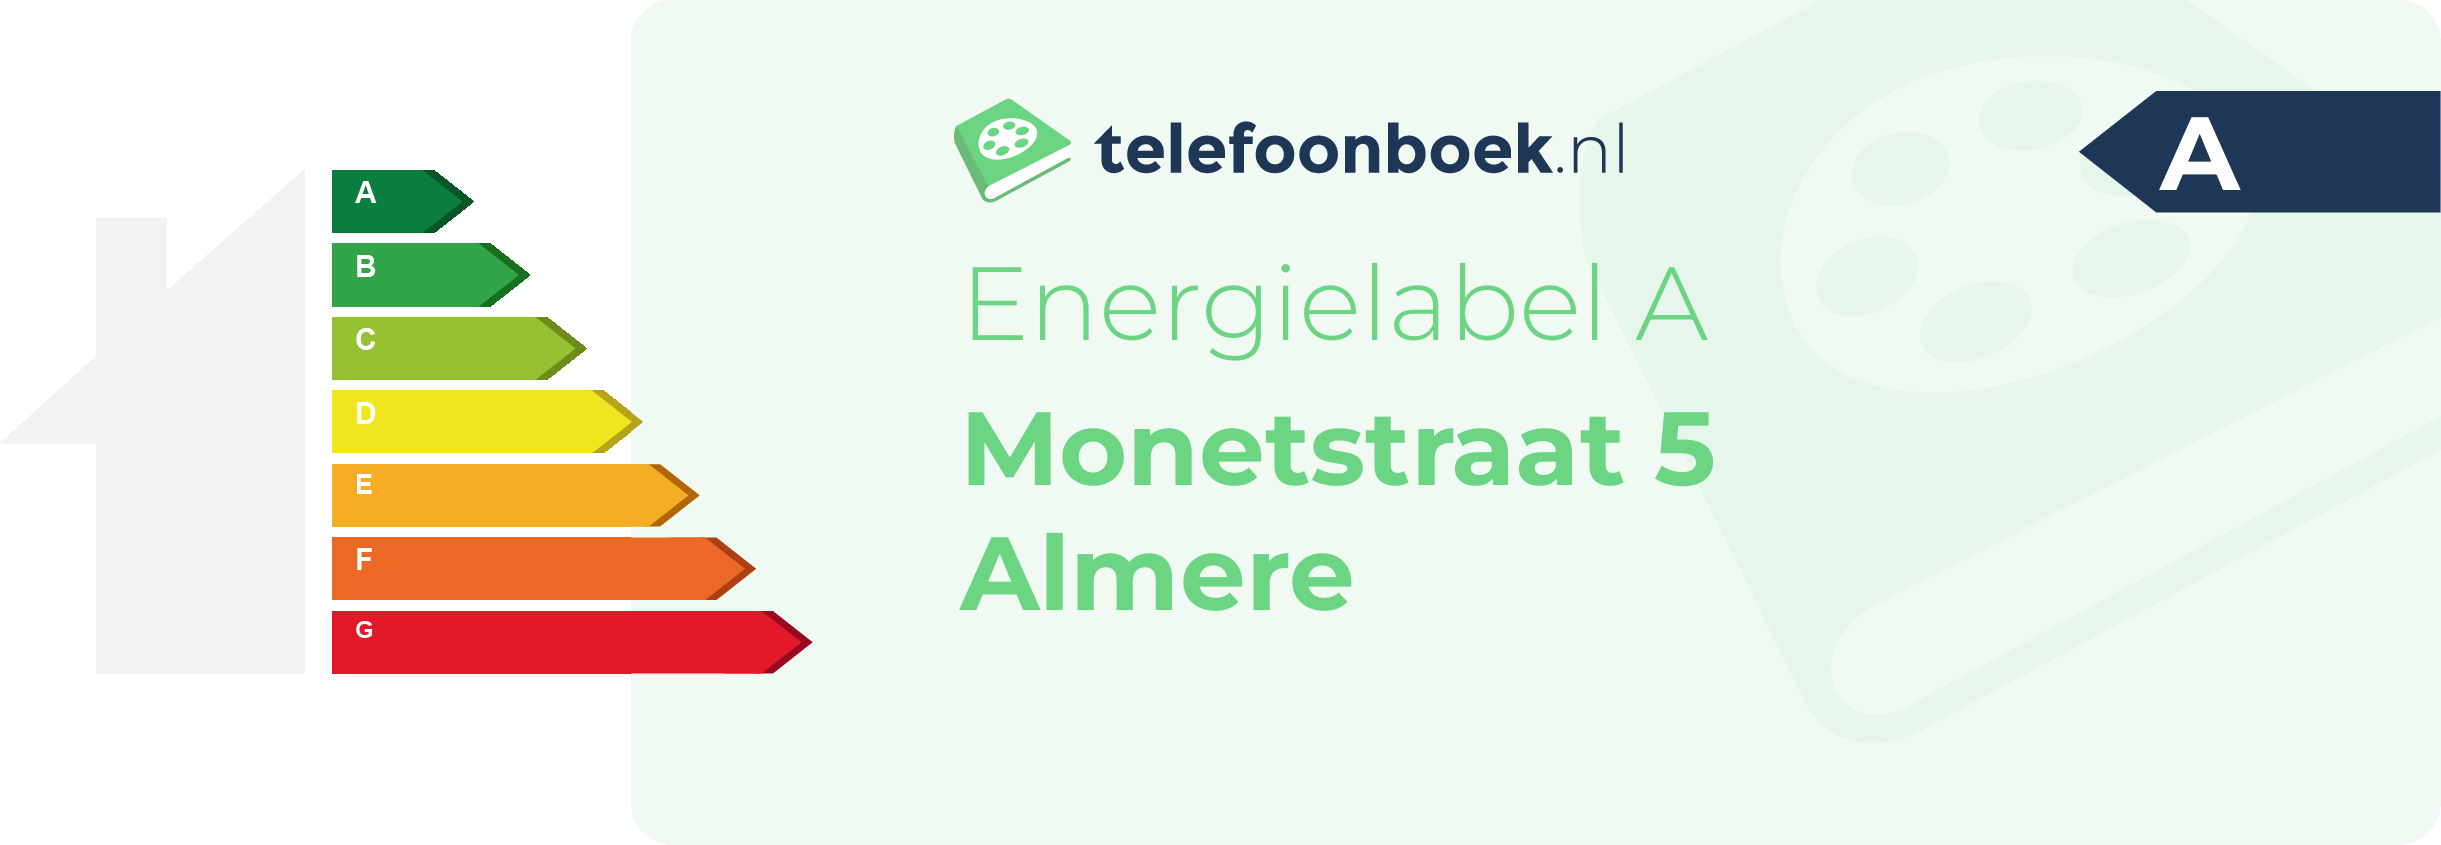 Energielabel Monetstraat 5 Almere